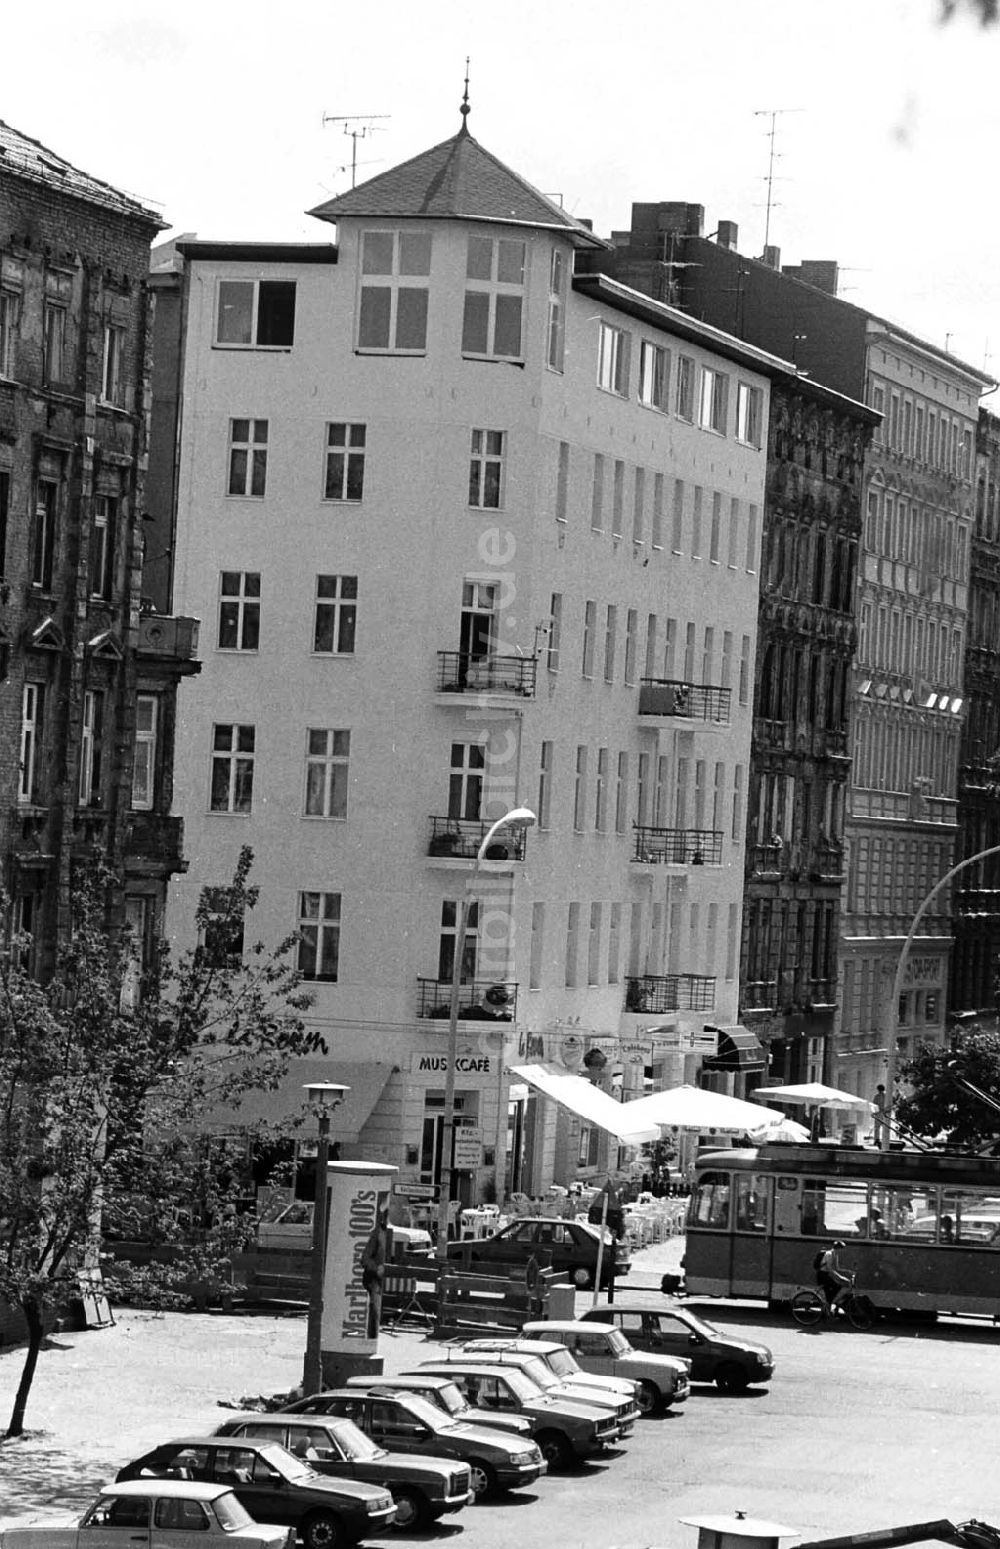 DDR-Fotoarchiv: Berlin - 29.07.92 renovierte Altbauten in Berlin-Prenzlauer Berg